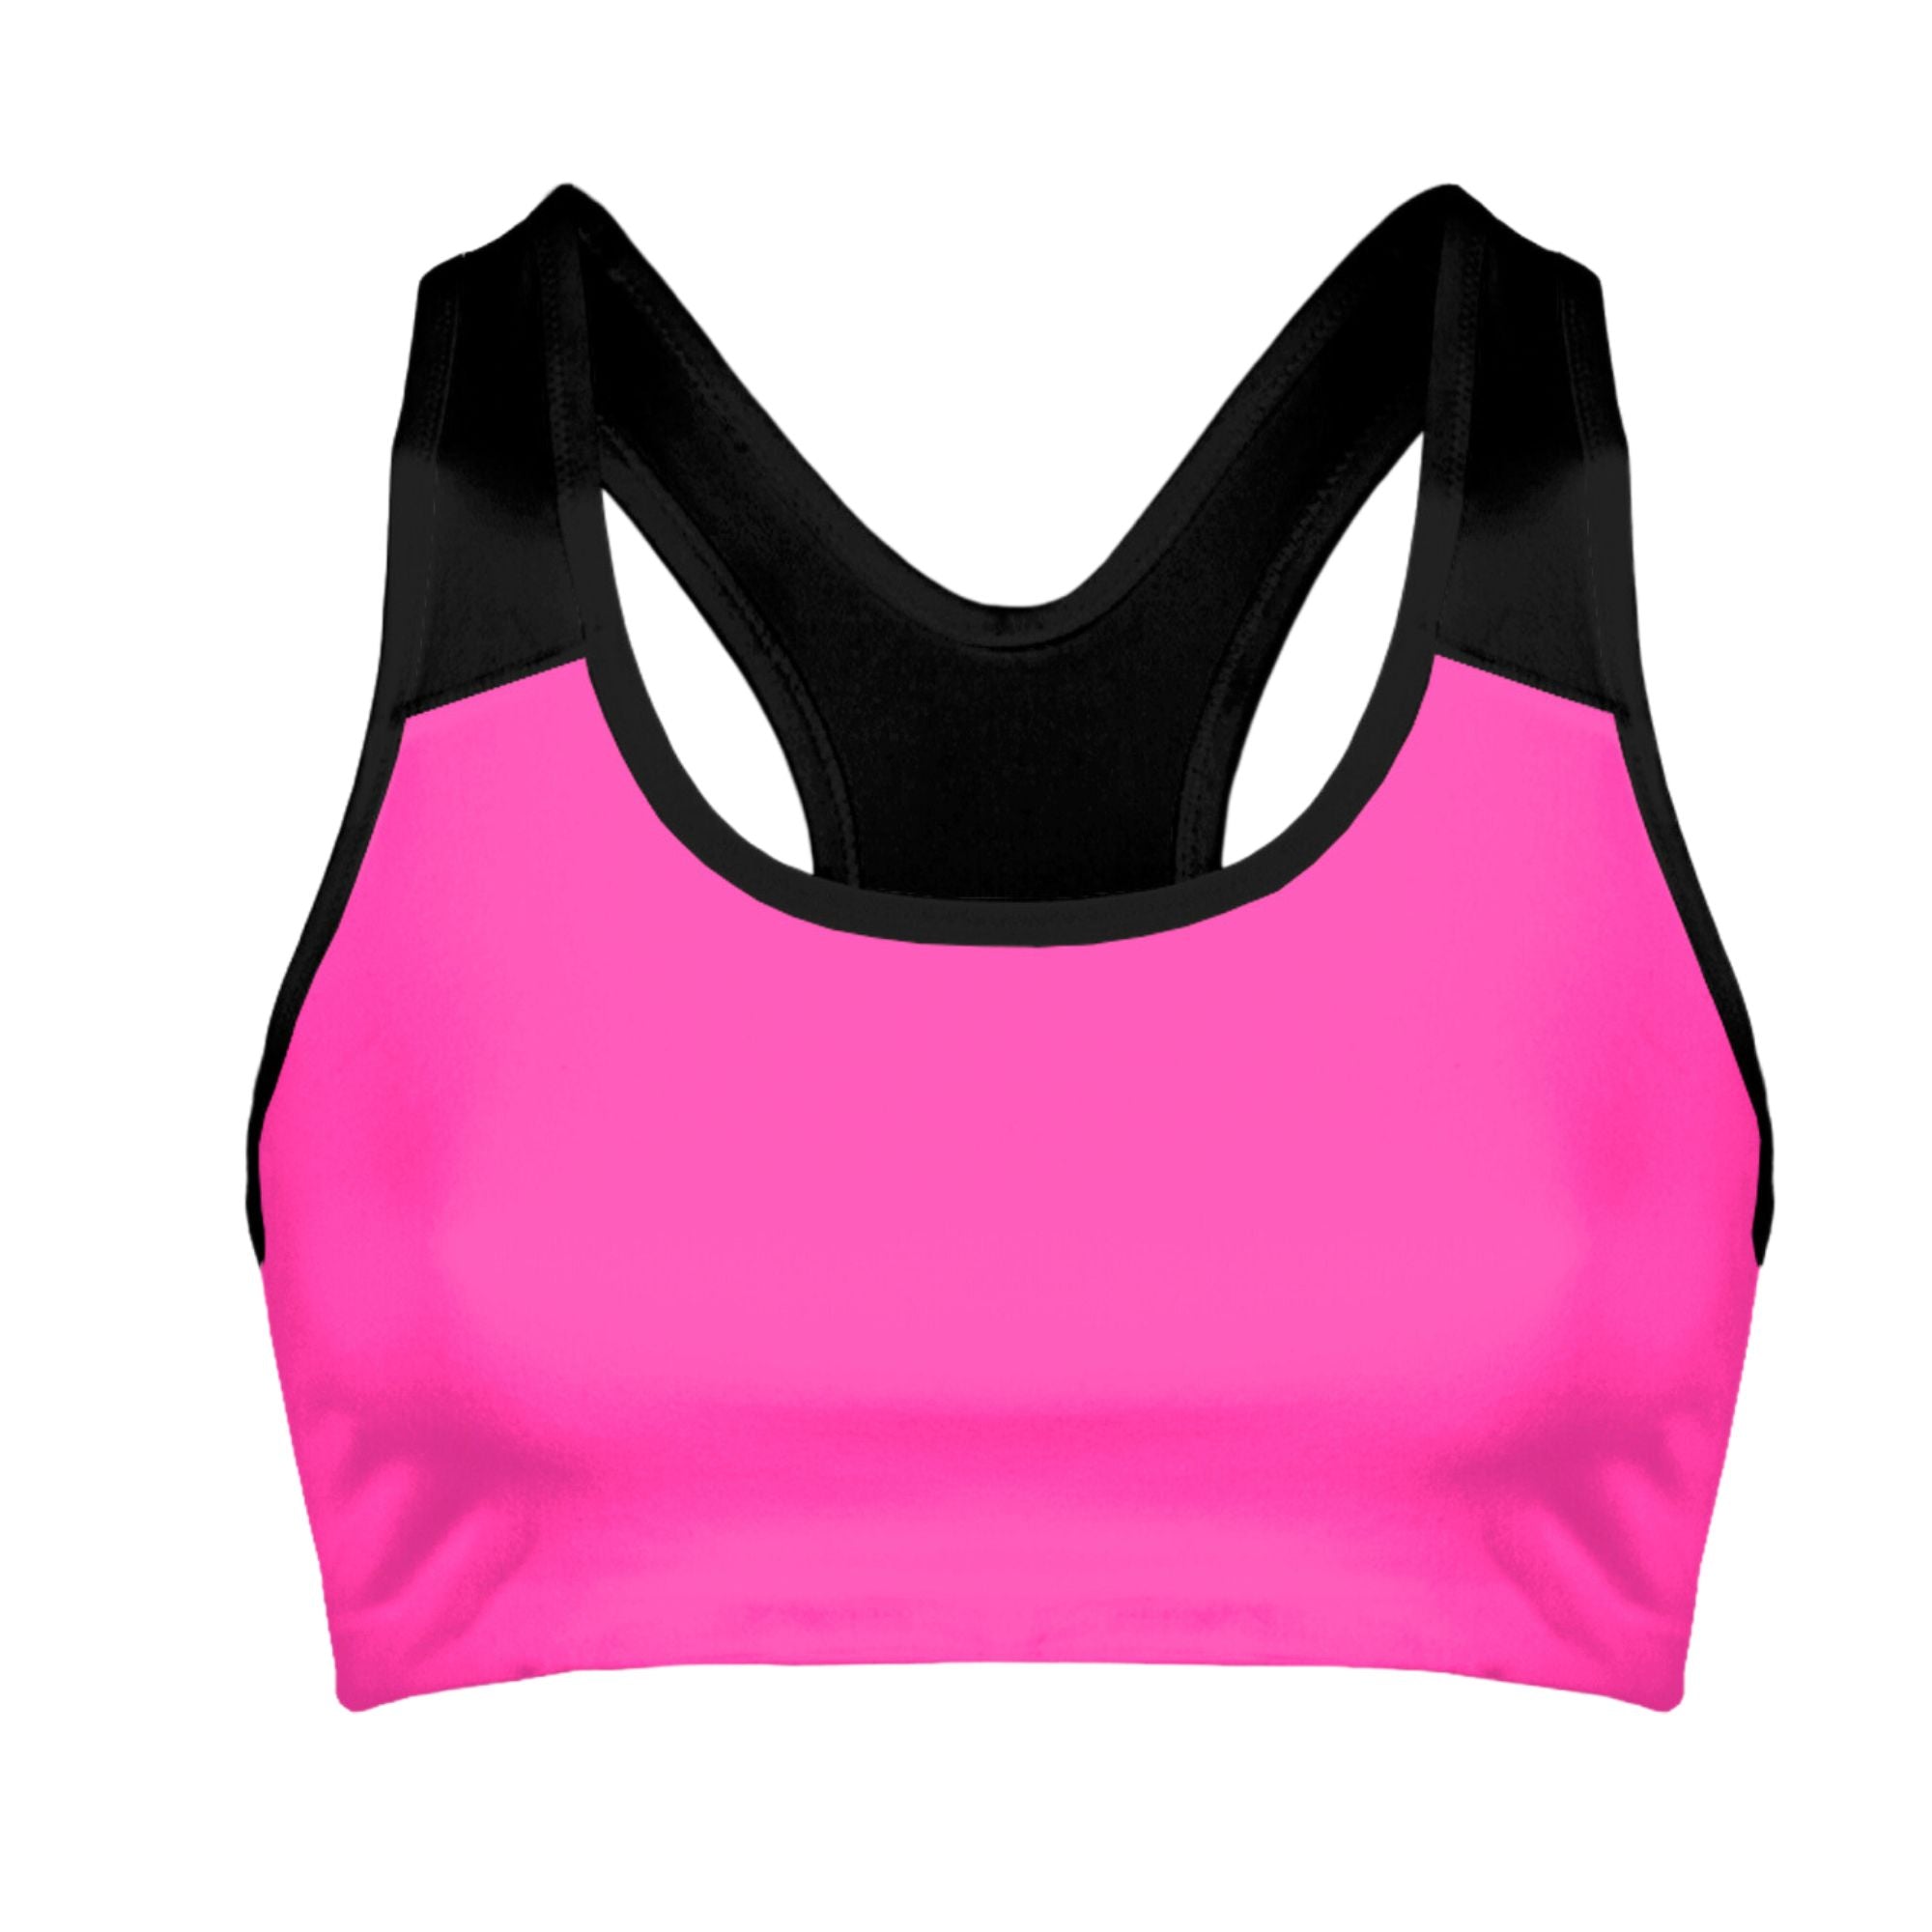 Adore Me Women's Lotus Crossover Bra Sports Bra Activewear 4x / Sahara  Sunset C01 Pink. : Target